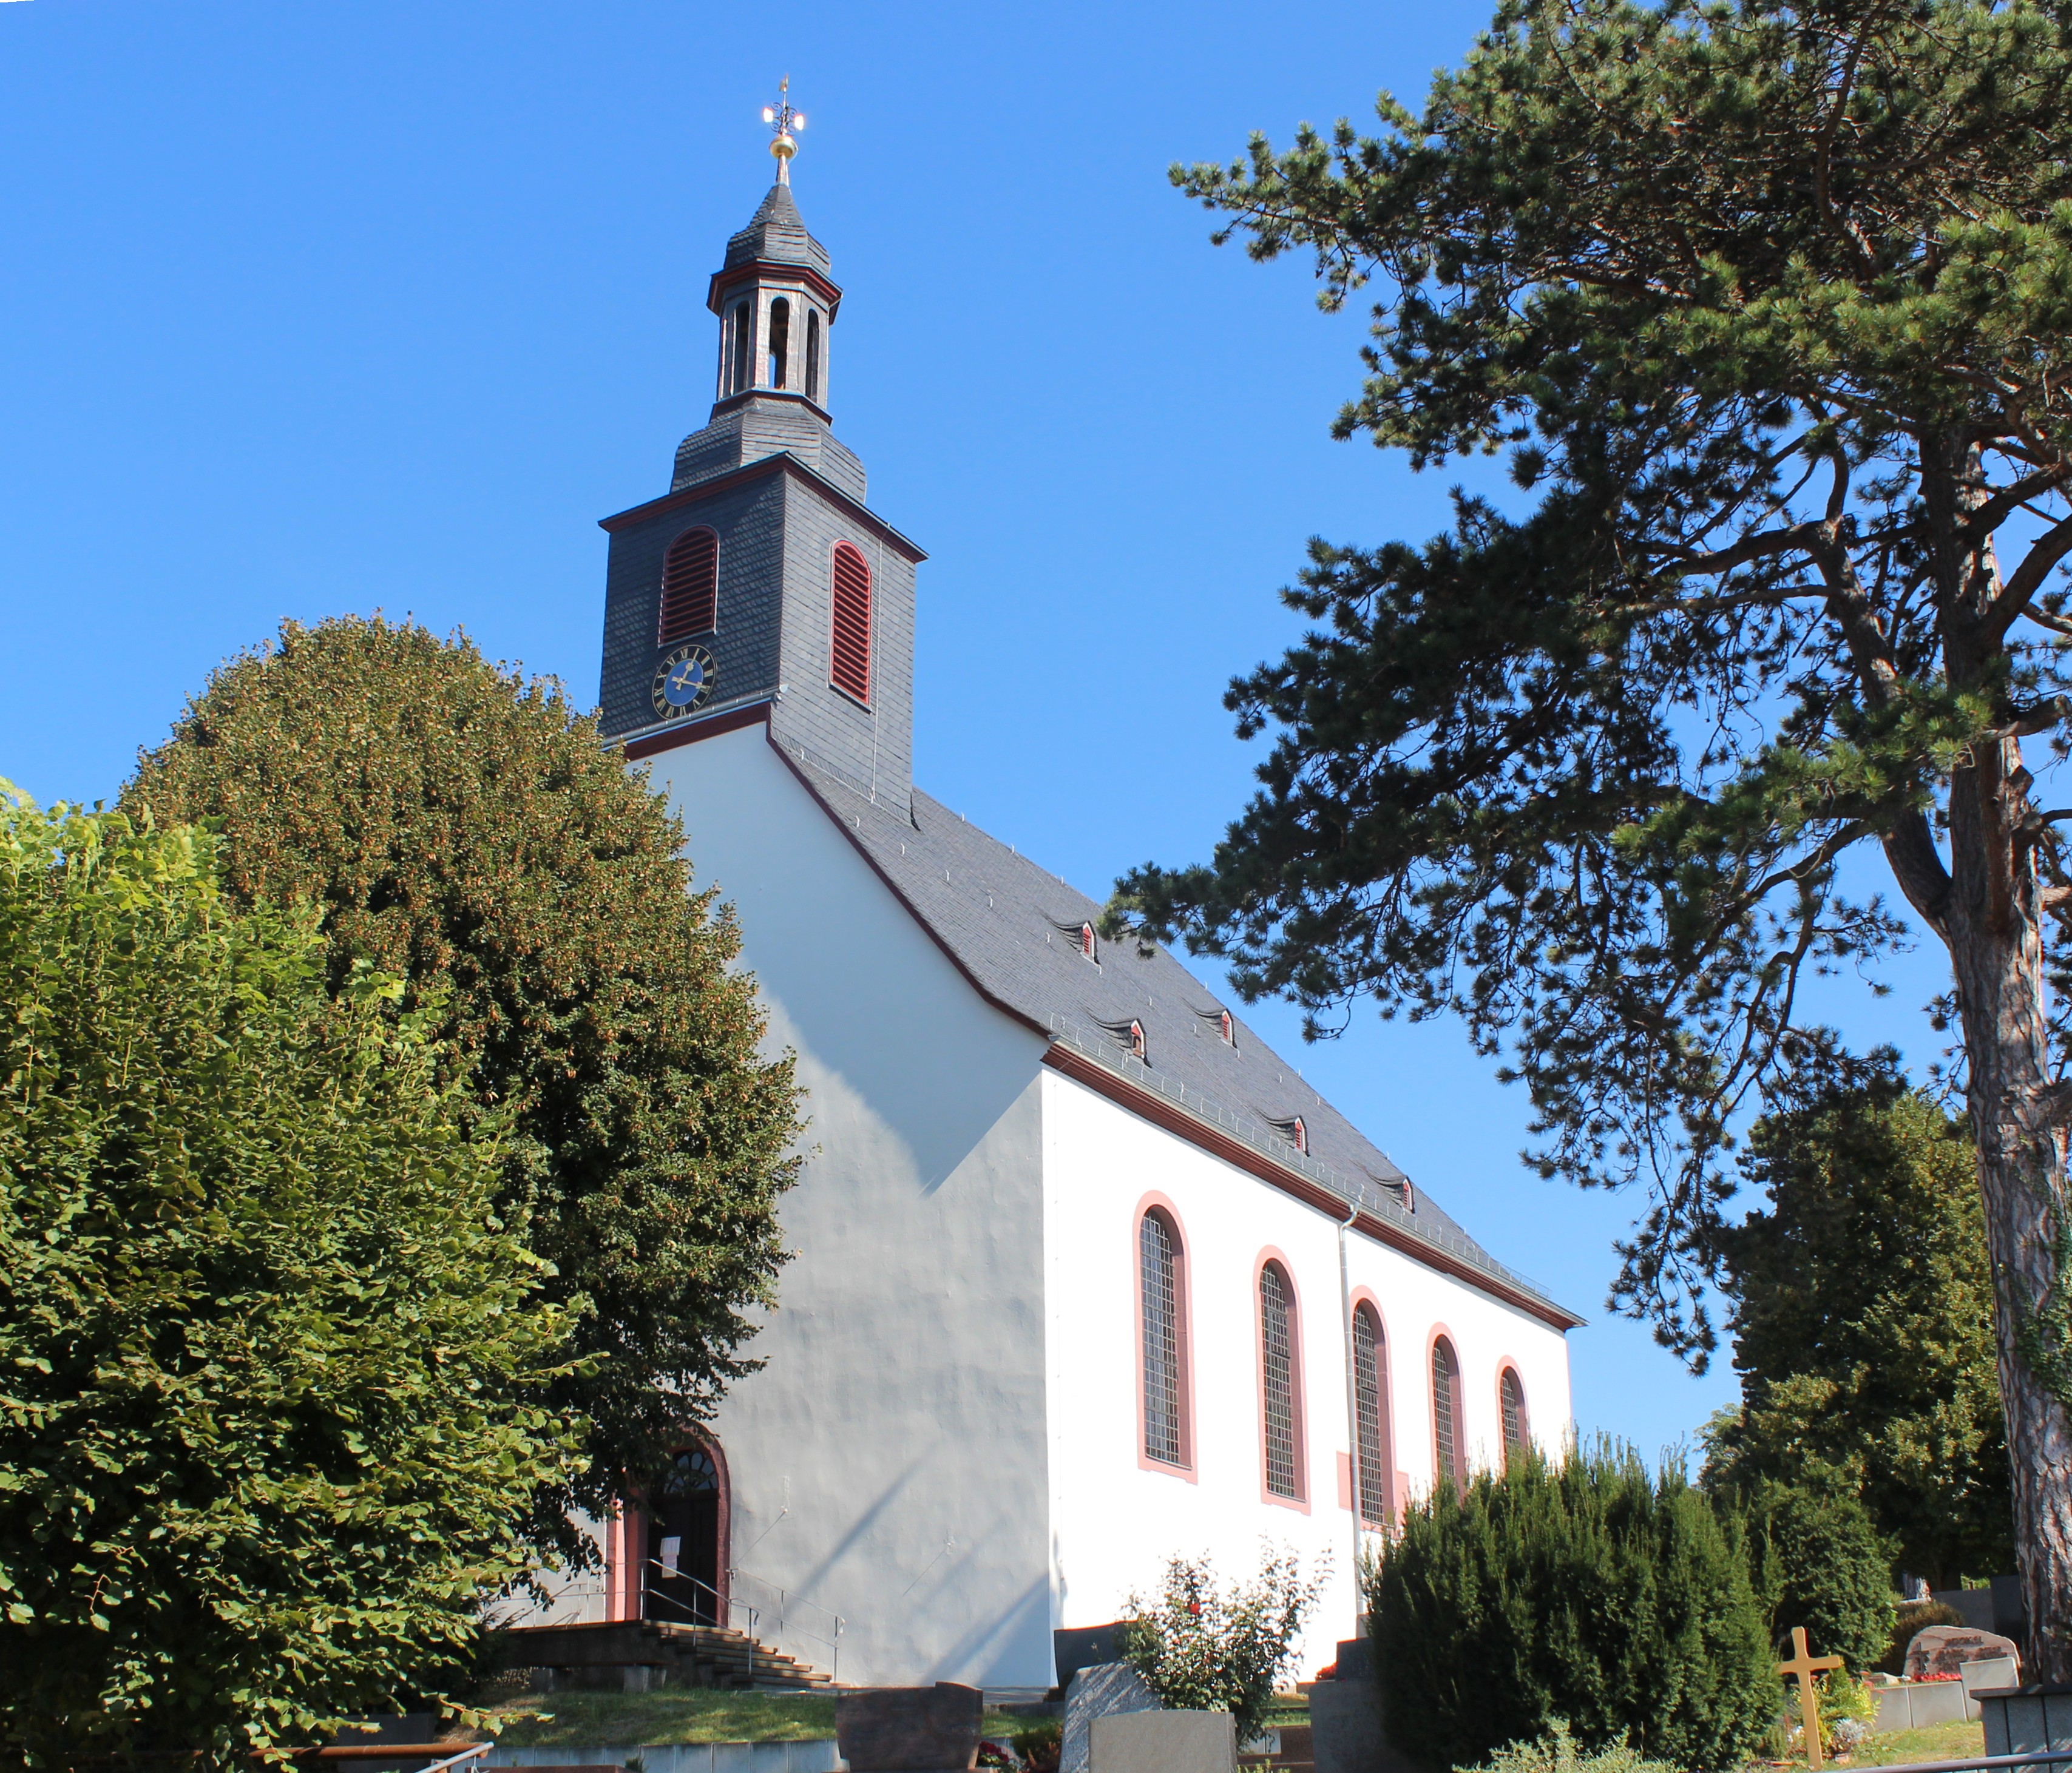 Ober-Ramstadts evangelische Kirche wurde 1717 nach Plänen von Louis Remy de la Fosse im Stil des Barock erbaut. Dieser stand in Diensten des Landgrafen Ernst Ludwig von Hessen-Darmstadt und entwarf auch das Darmstädter Schloss. Das Innere der Kirche wurde